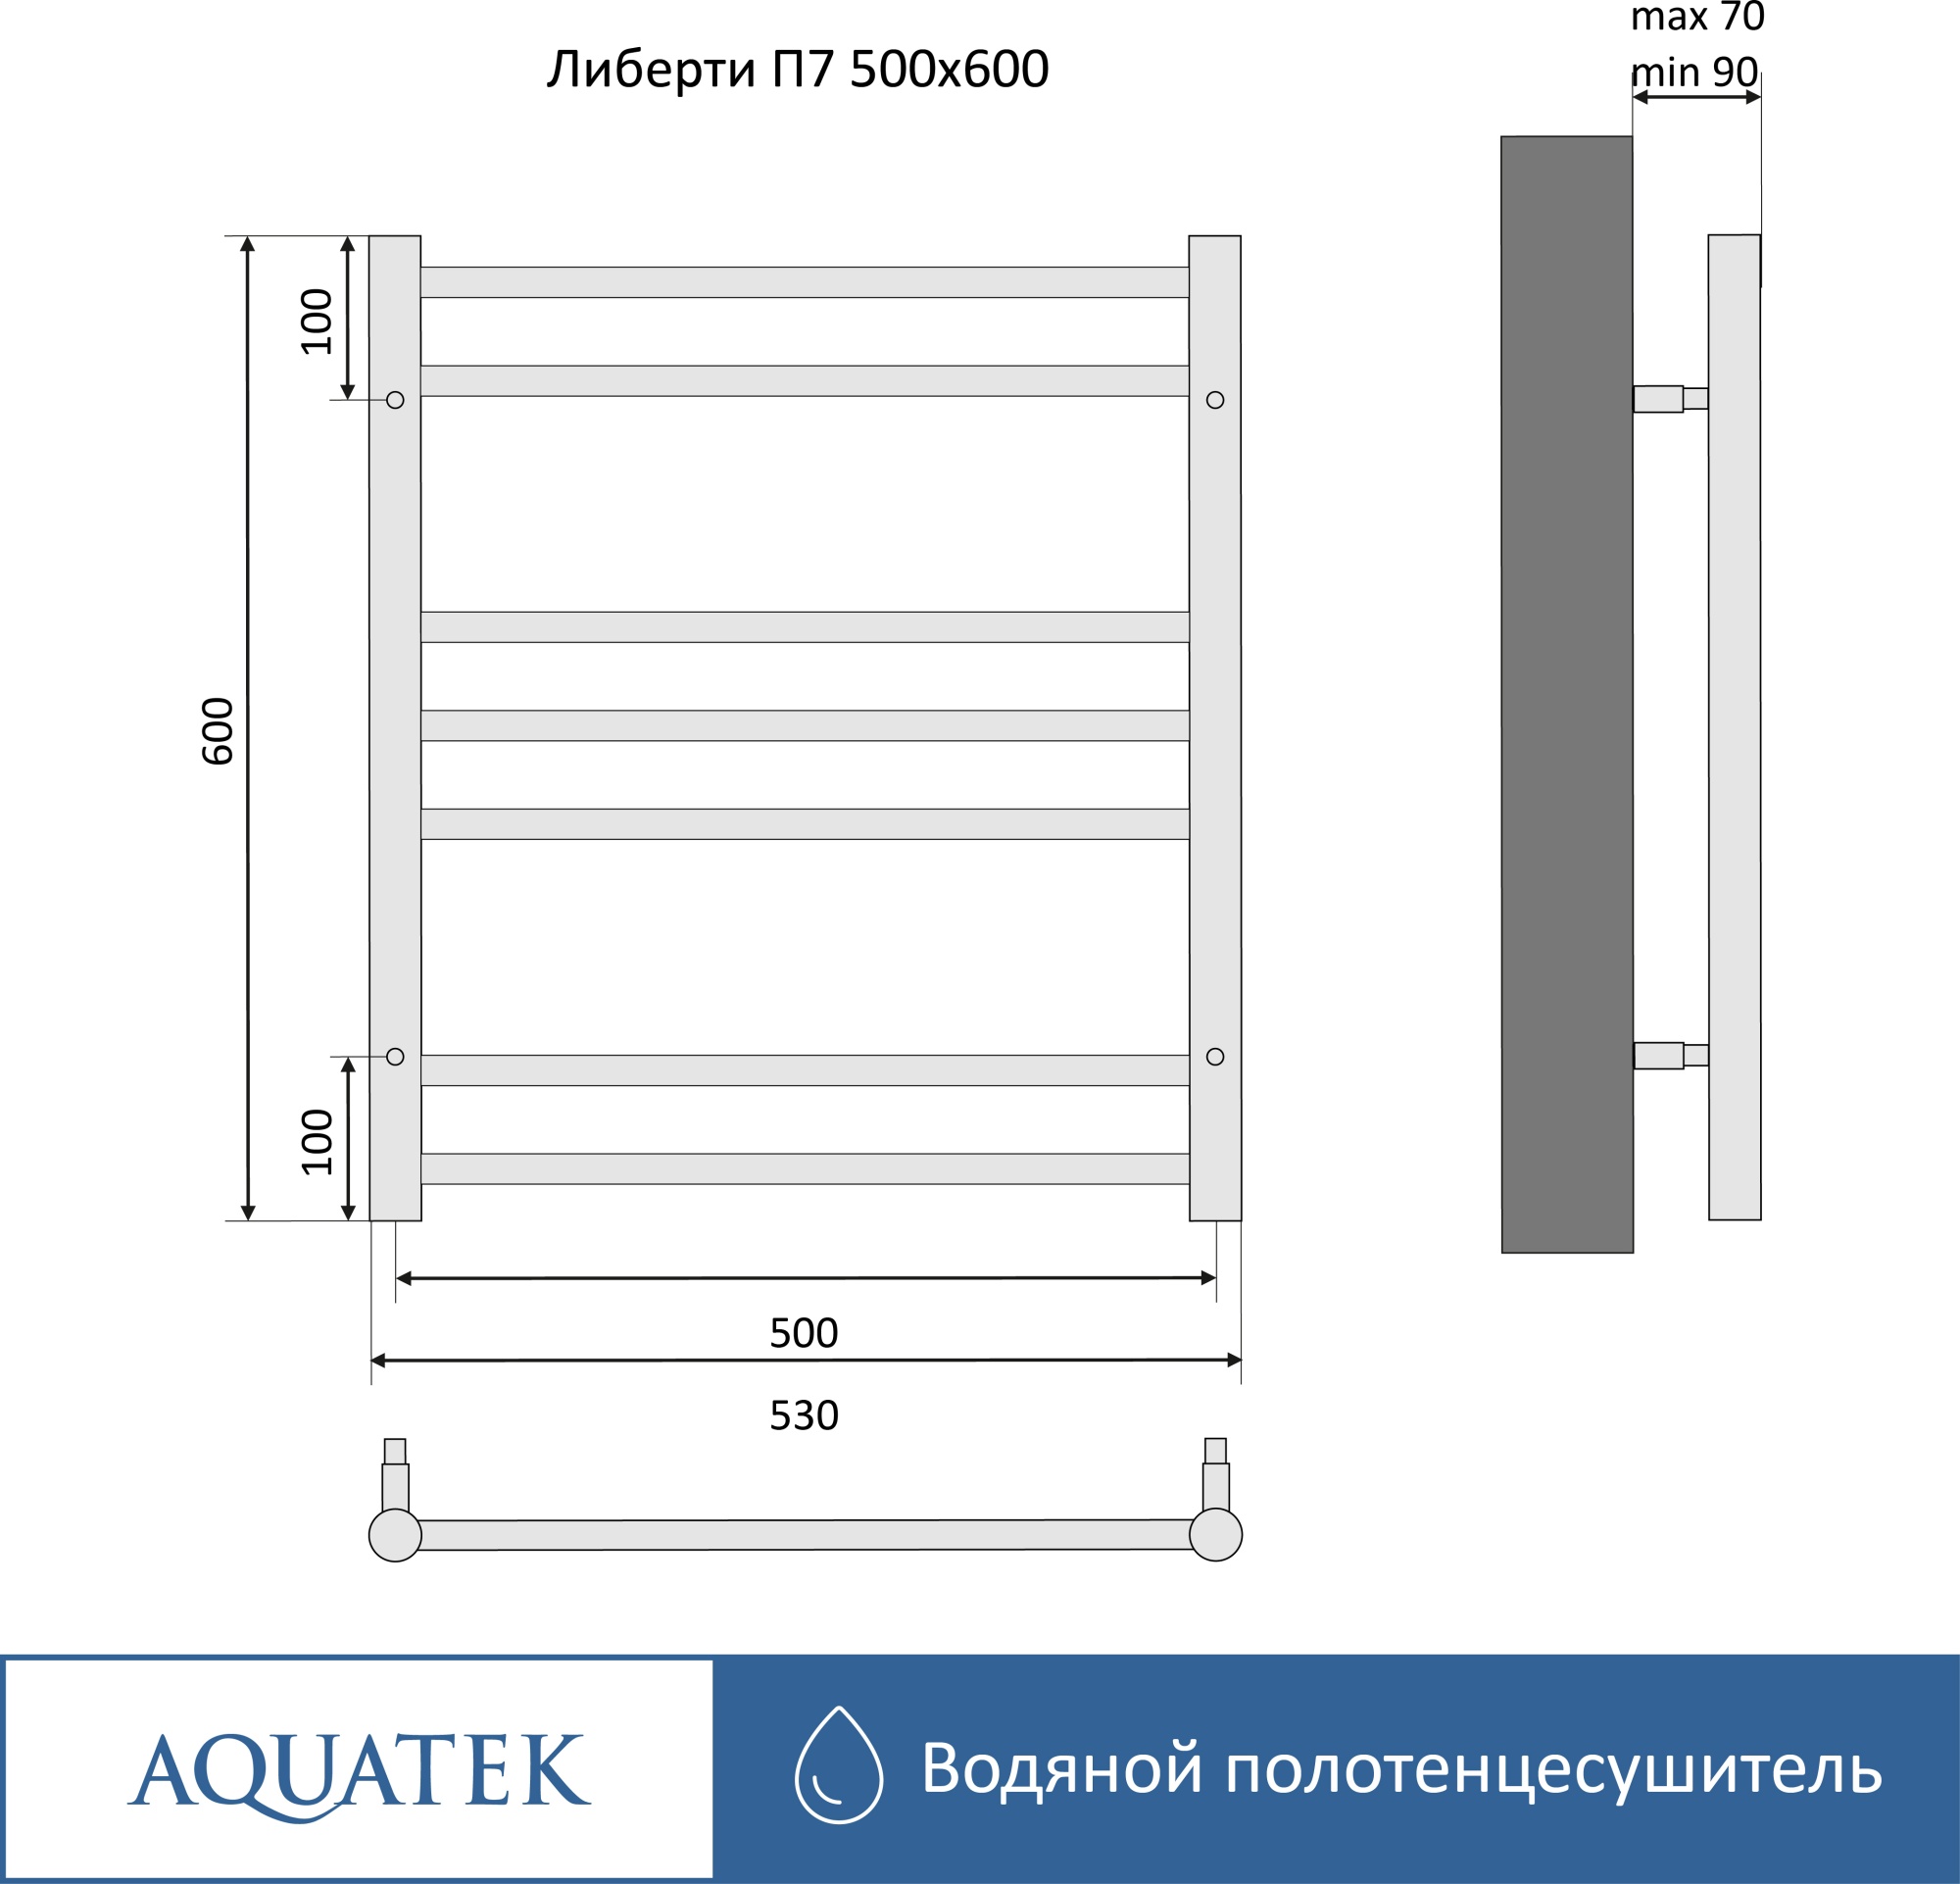 Полотенцесушитель водяной Aquatek Либерти П7 50x60 AQ RR0760CH